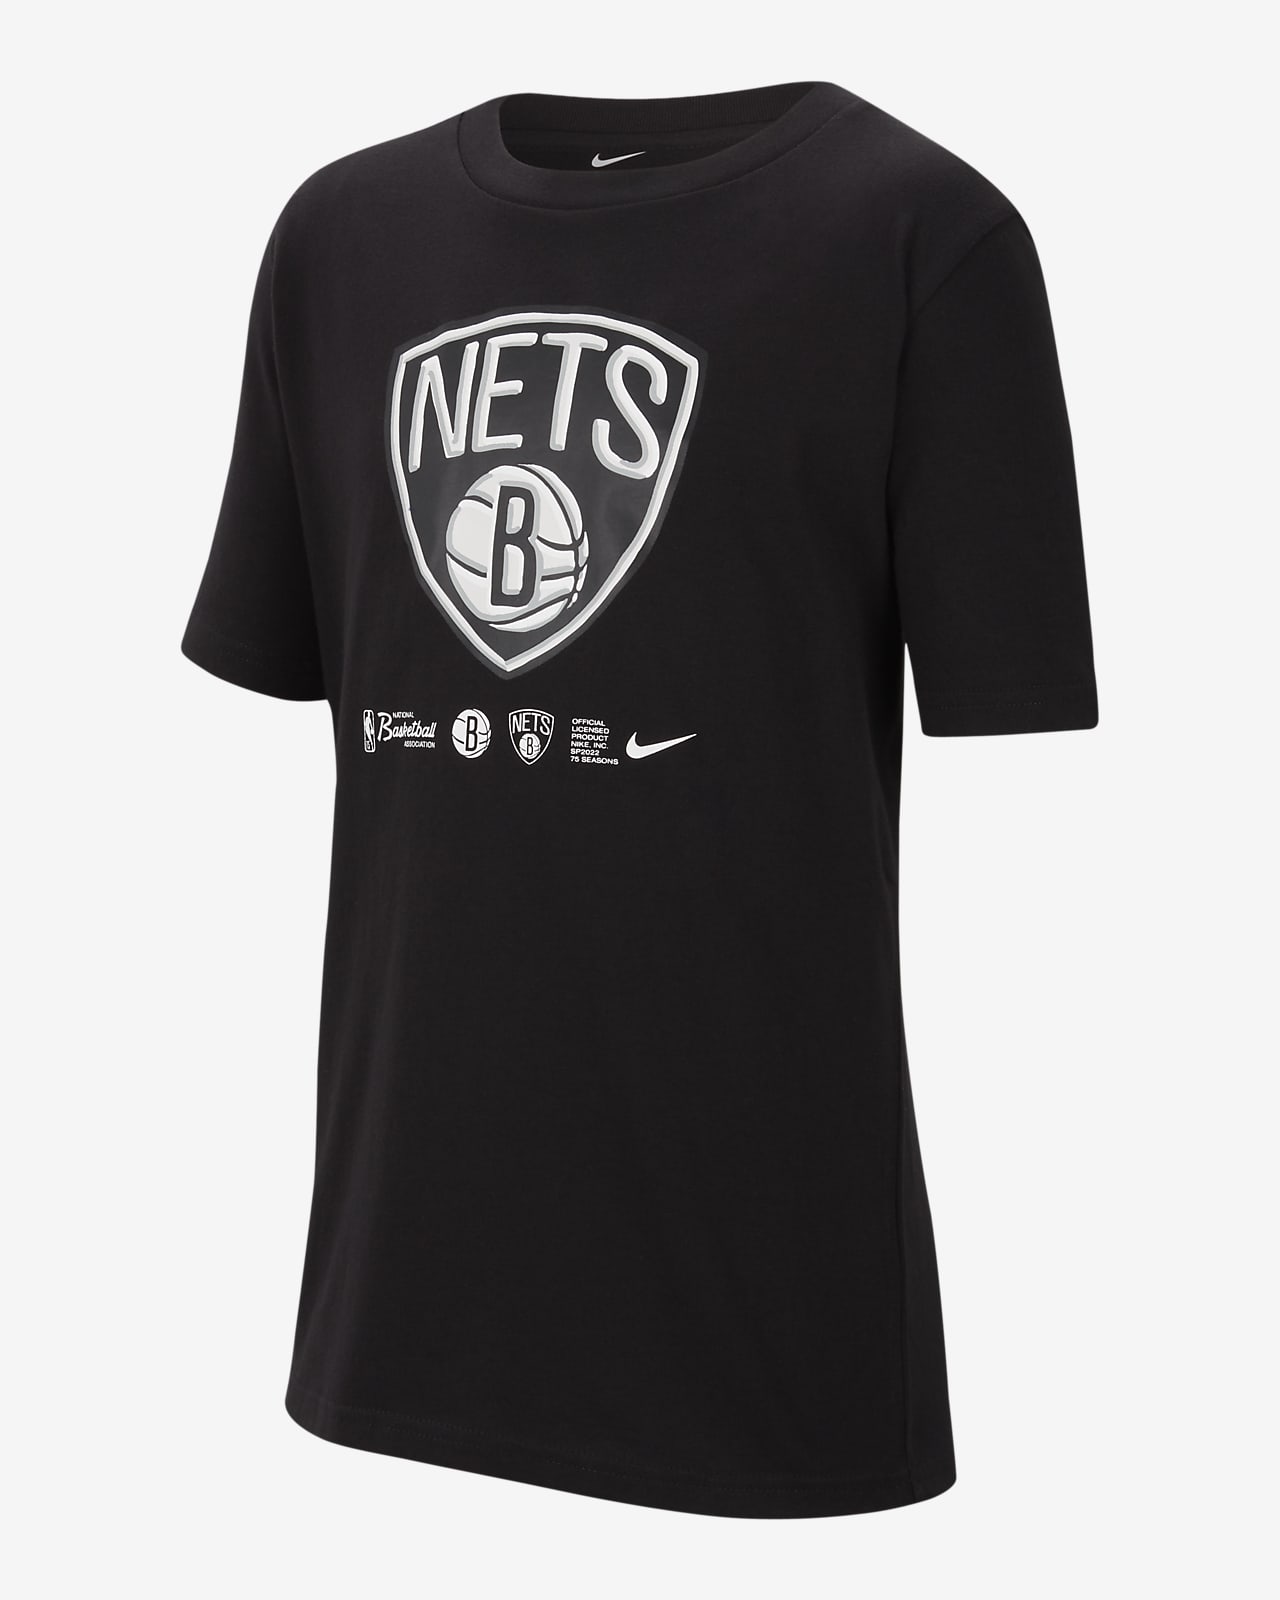 Brooklyn Nets Nike Dri-FIT NBA kindershirt